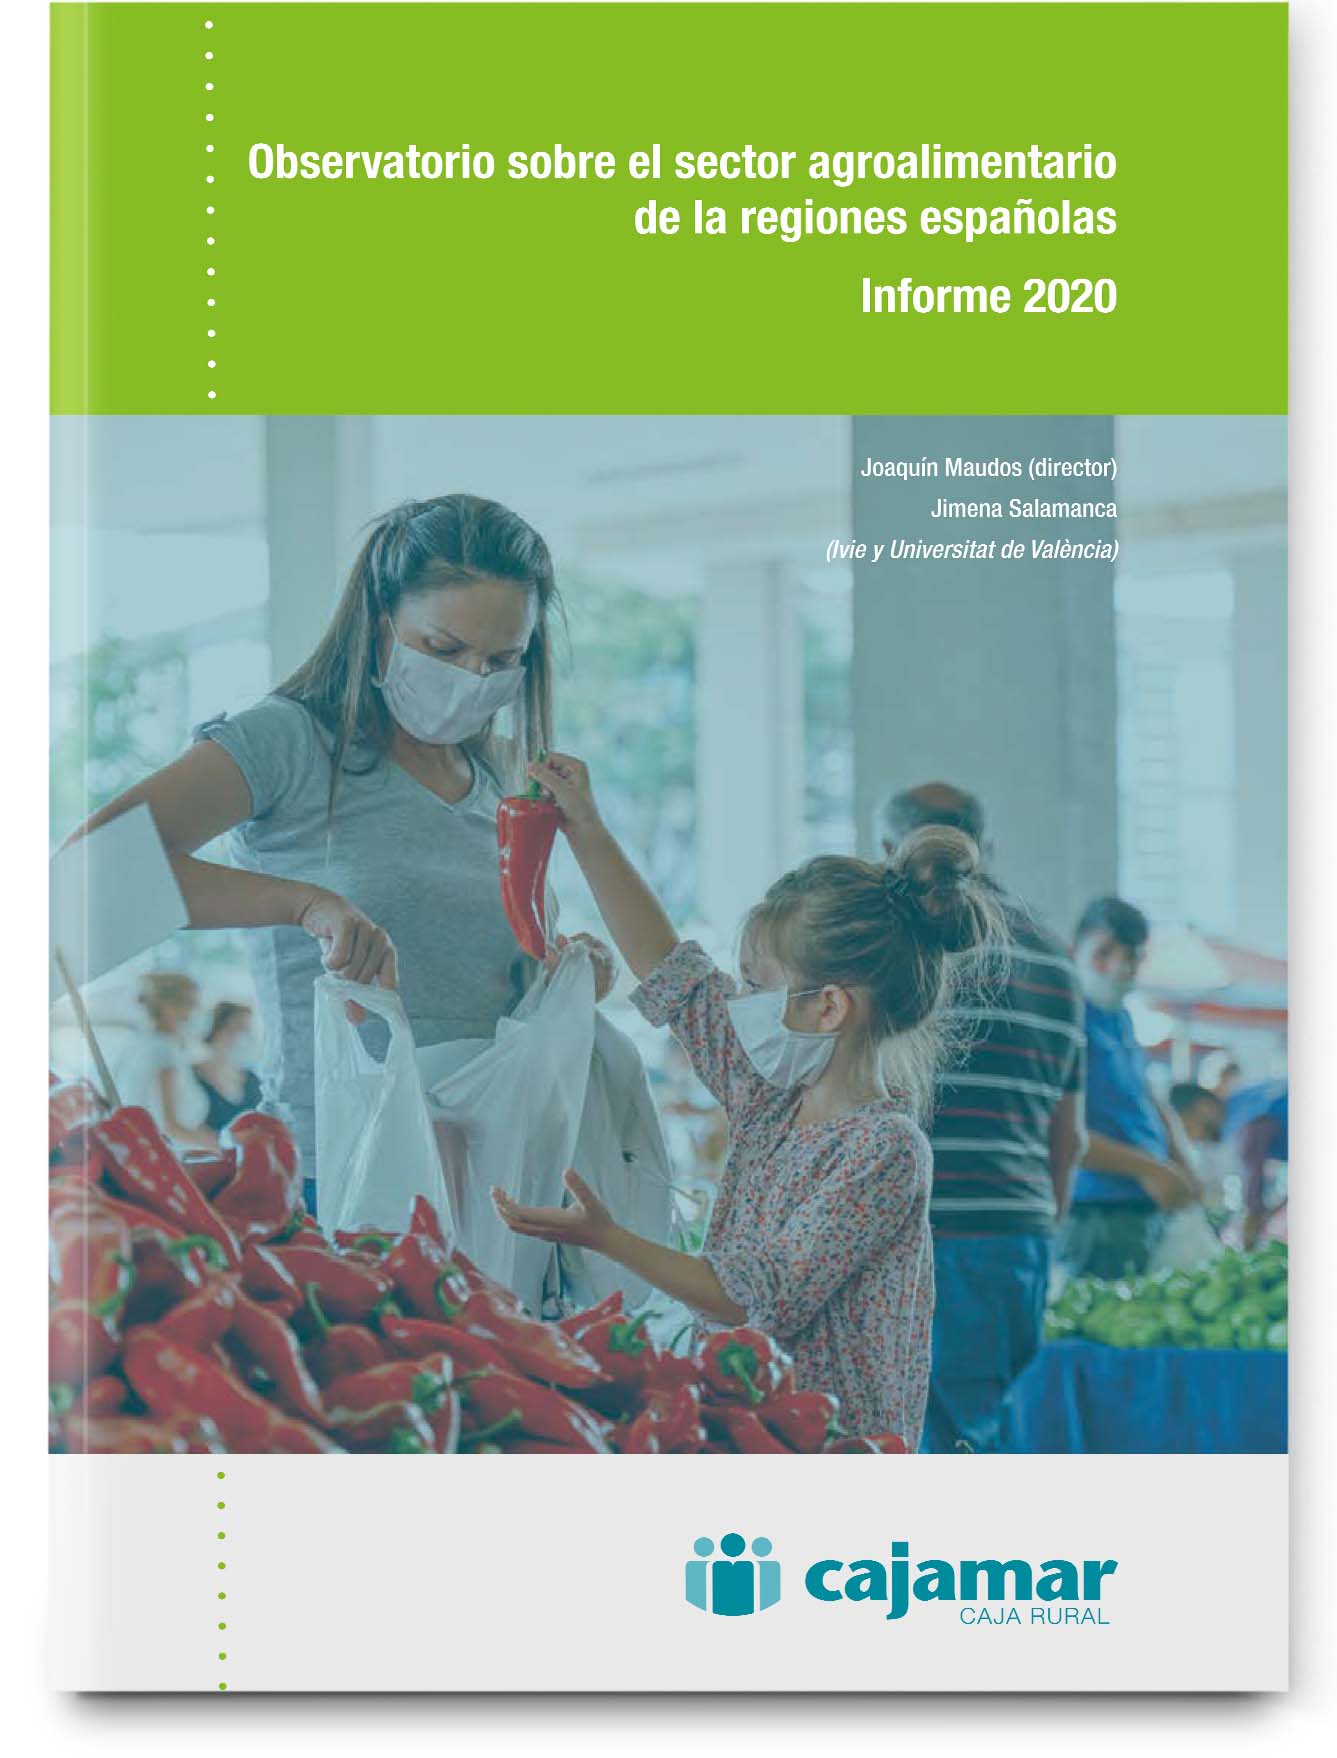 Observatorio sobre el sector agroalimentario de las regiones españolas 2020